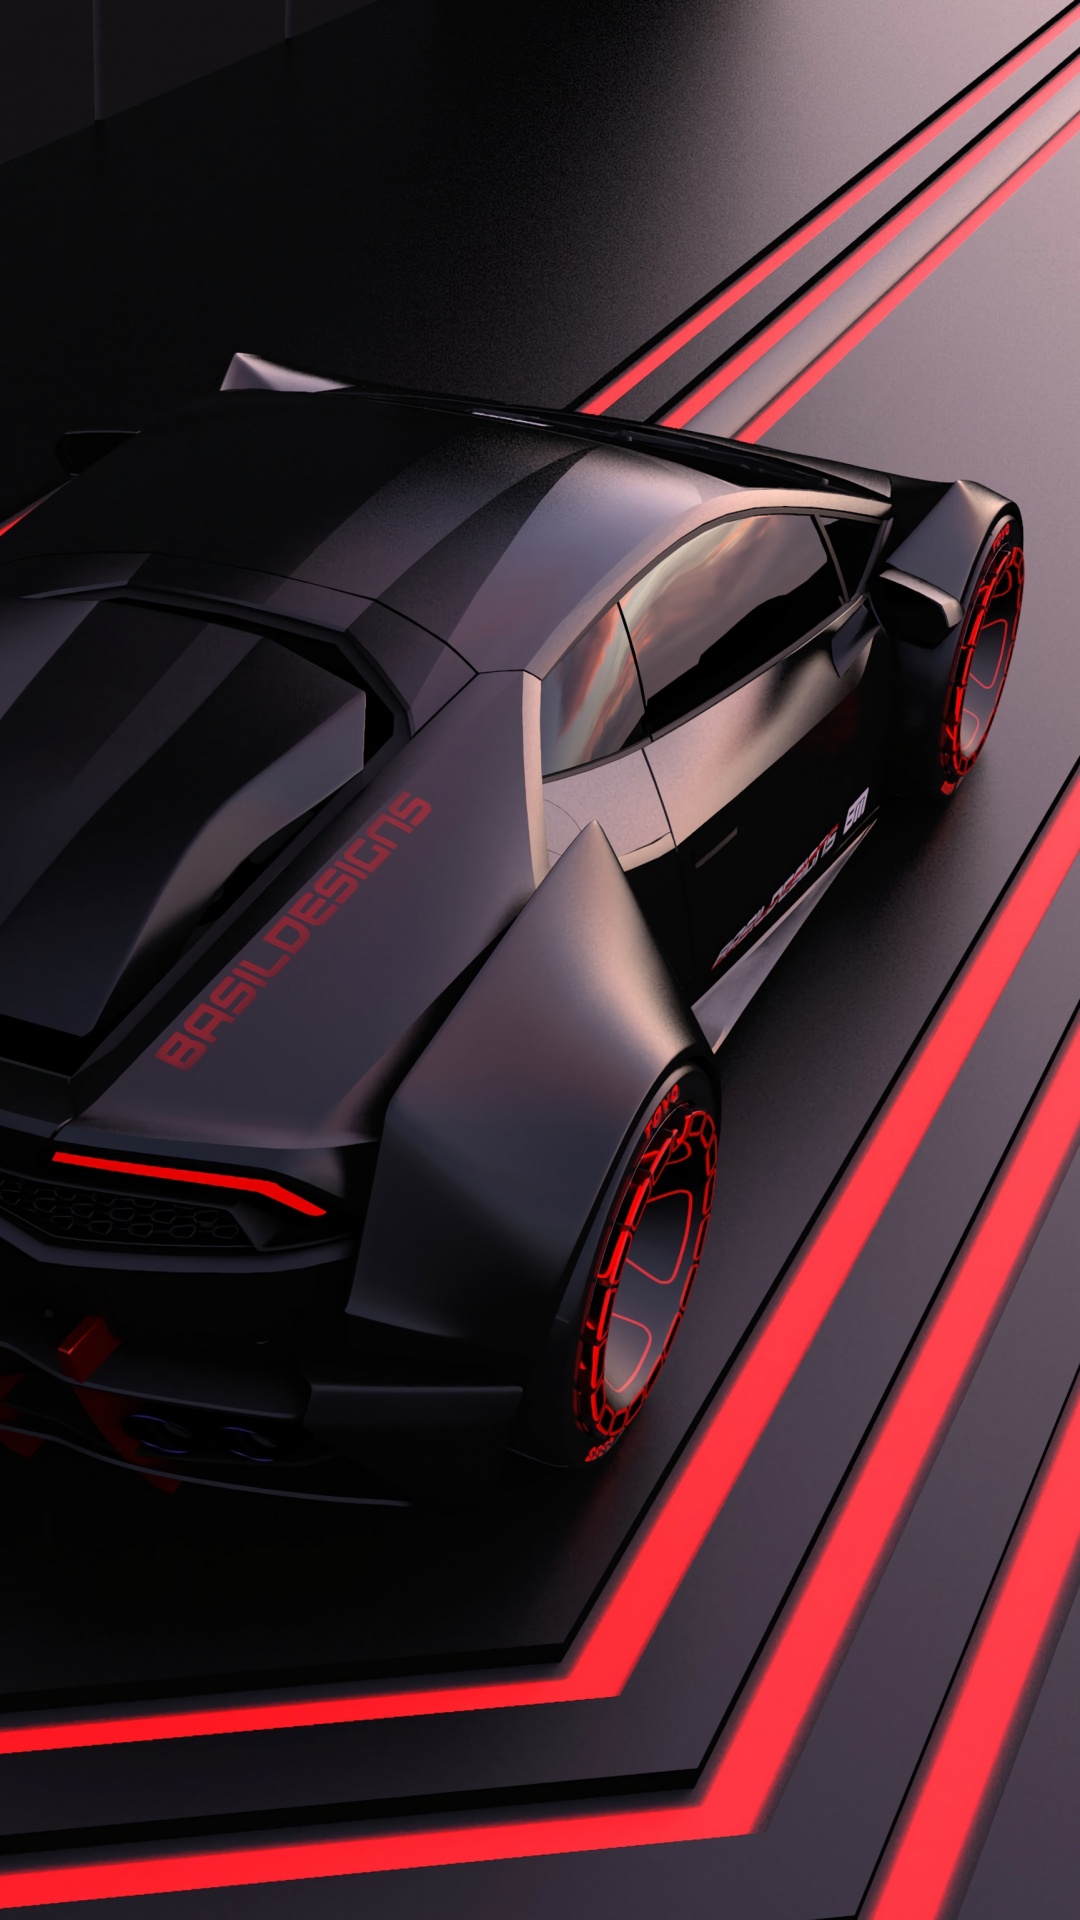 Voiture de Sport Ferrari Rouge Sur Tunnel Rouge et Noir. Wallpaper in 1080x1920 Resolution